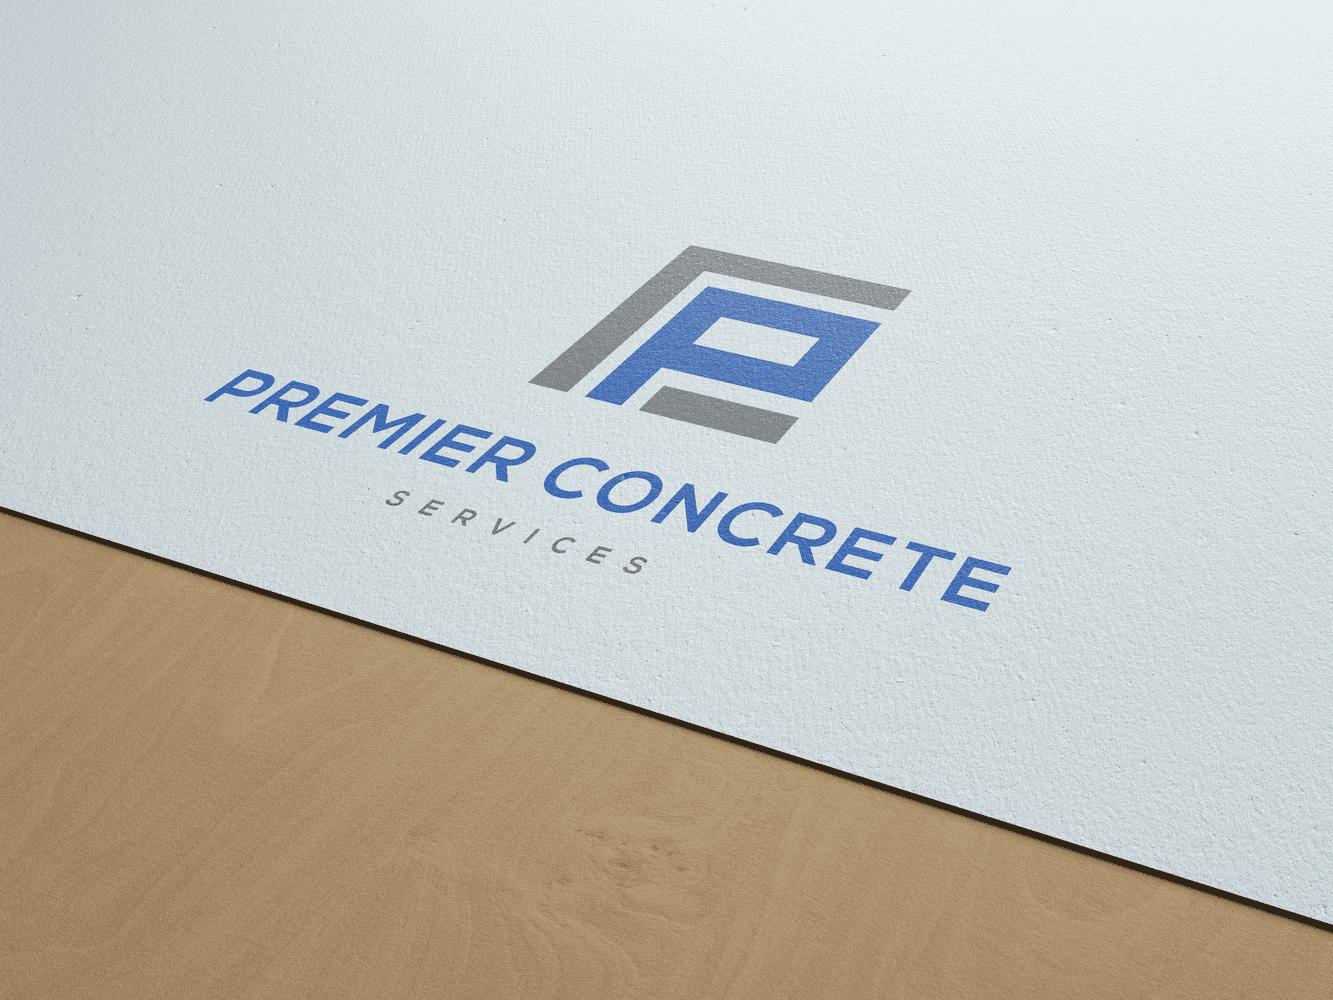 Premier Concrete Services | Logo Design | Bentonville, AR